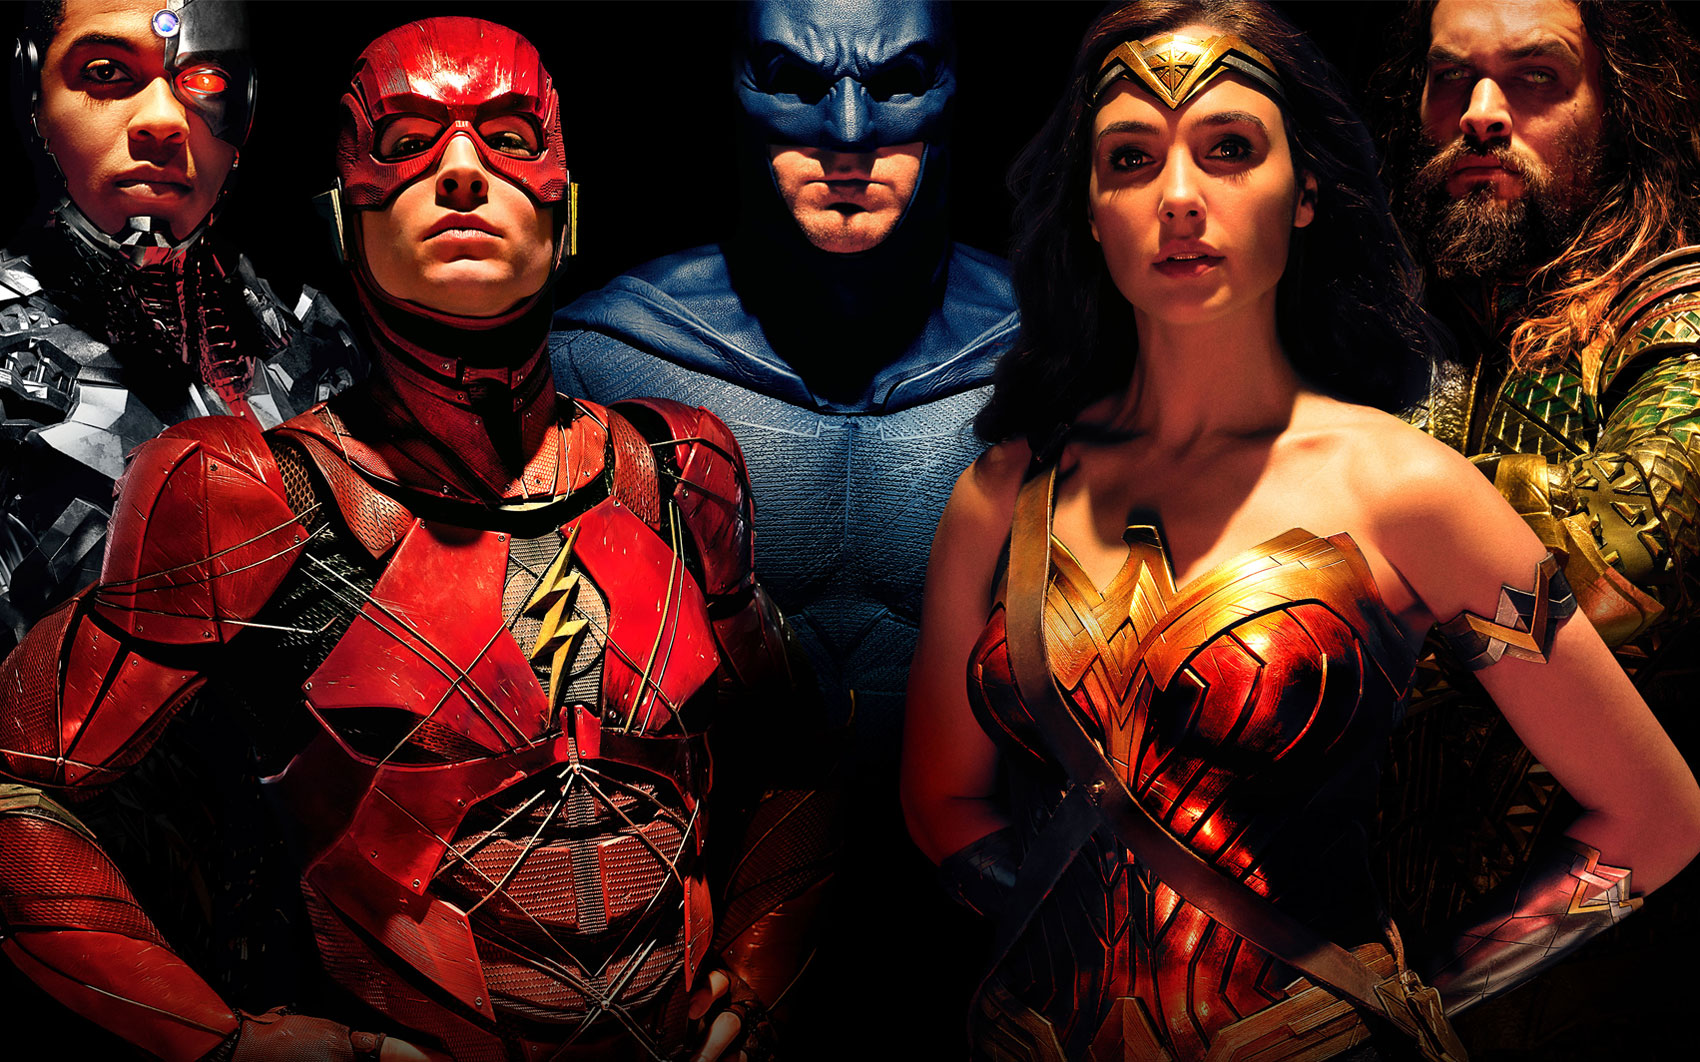 Η ταινία «Justice League» θα βγει στις ελληνικές αίθουσες στις 16 Νοεμβρίου